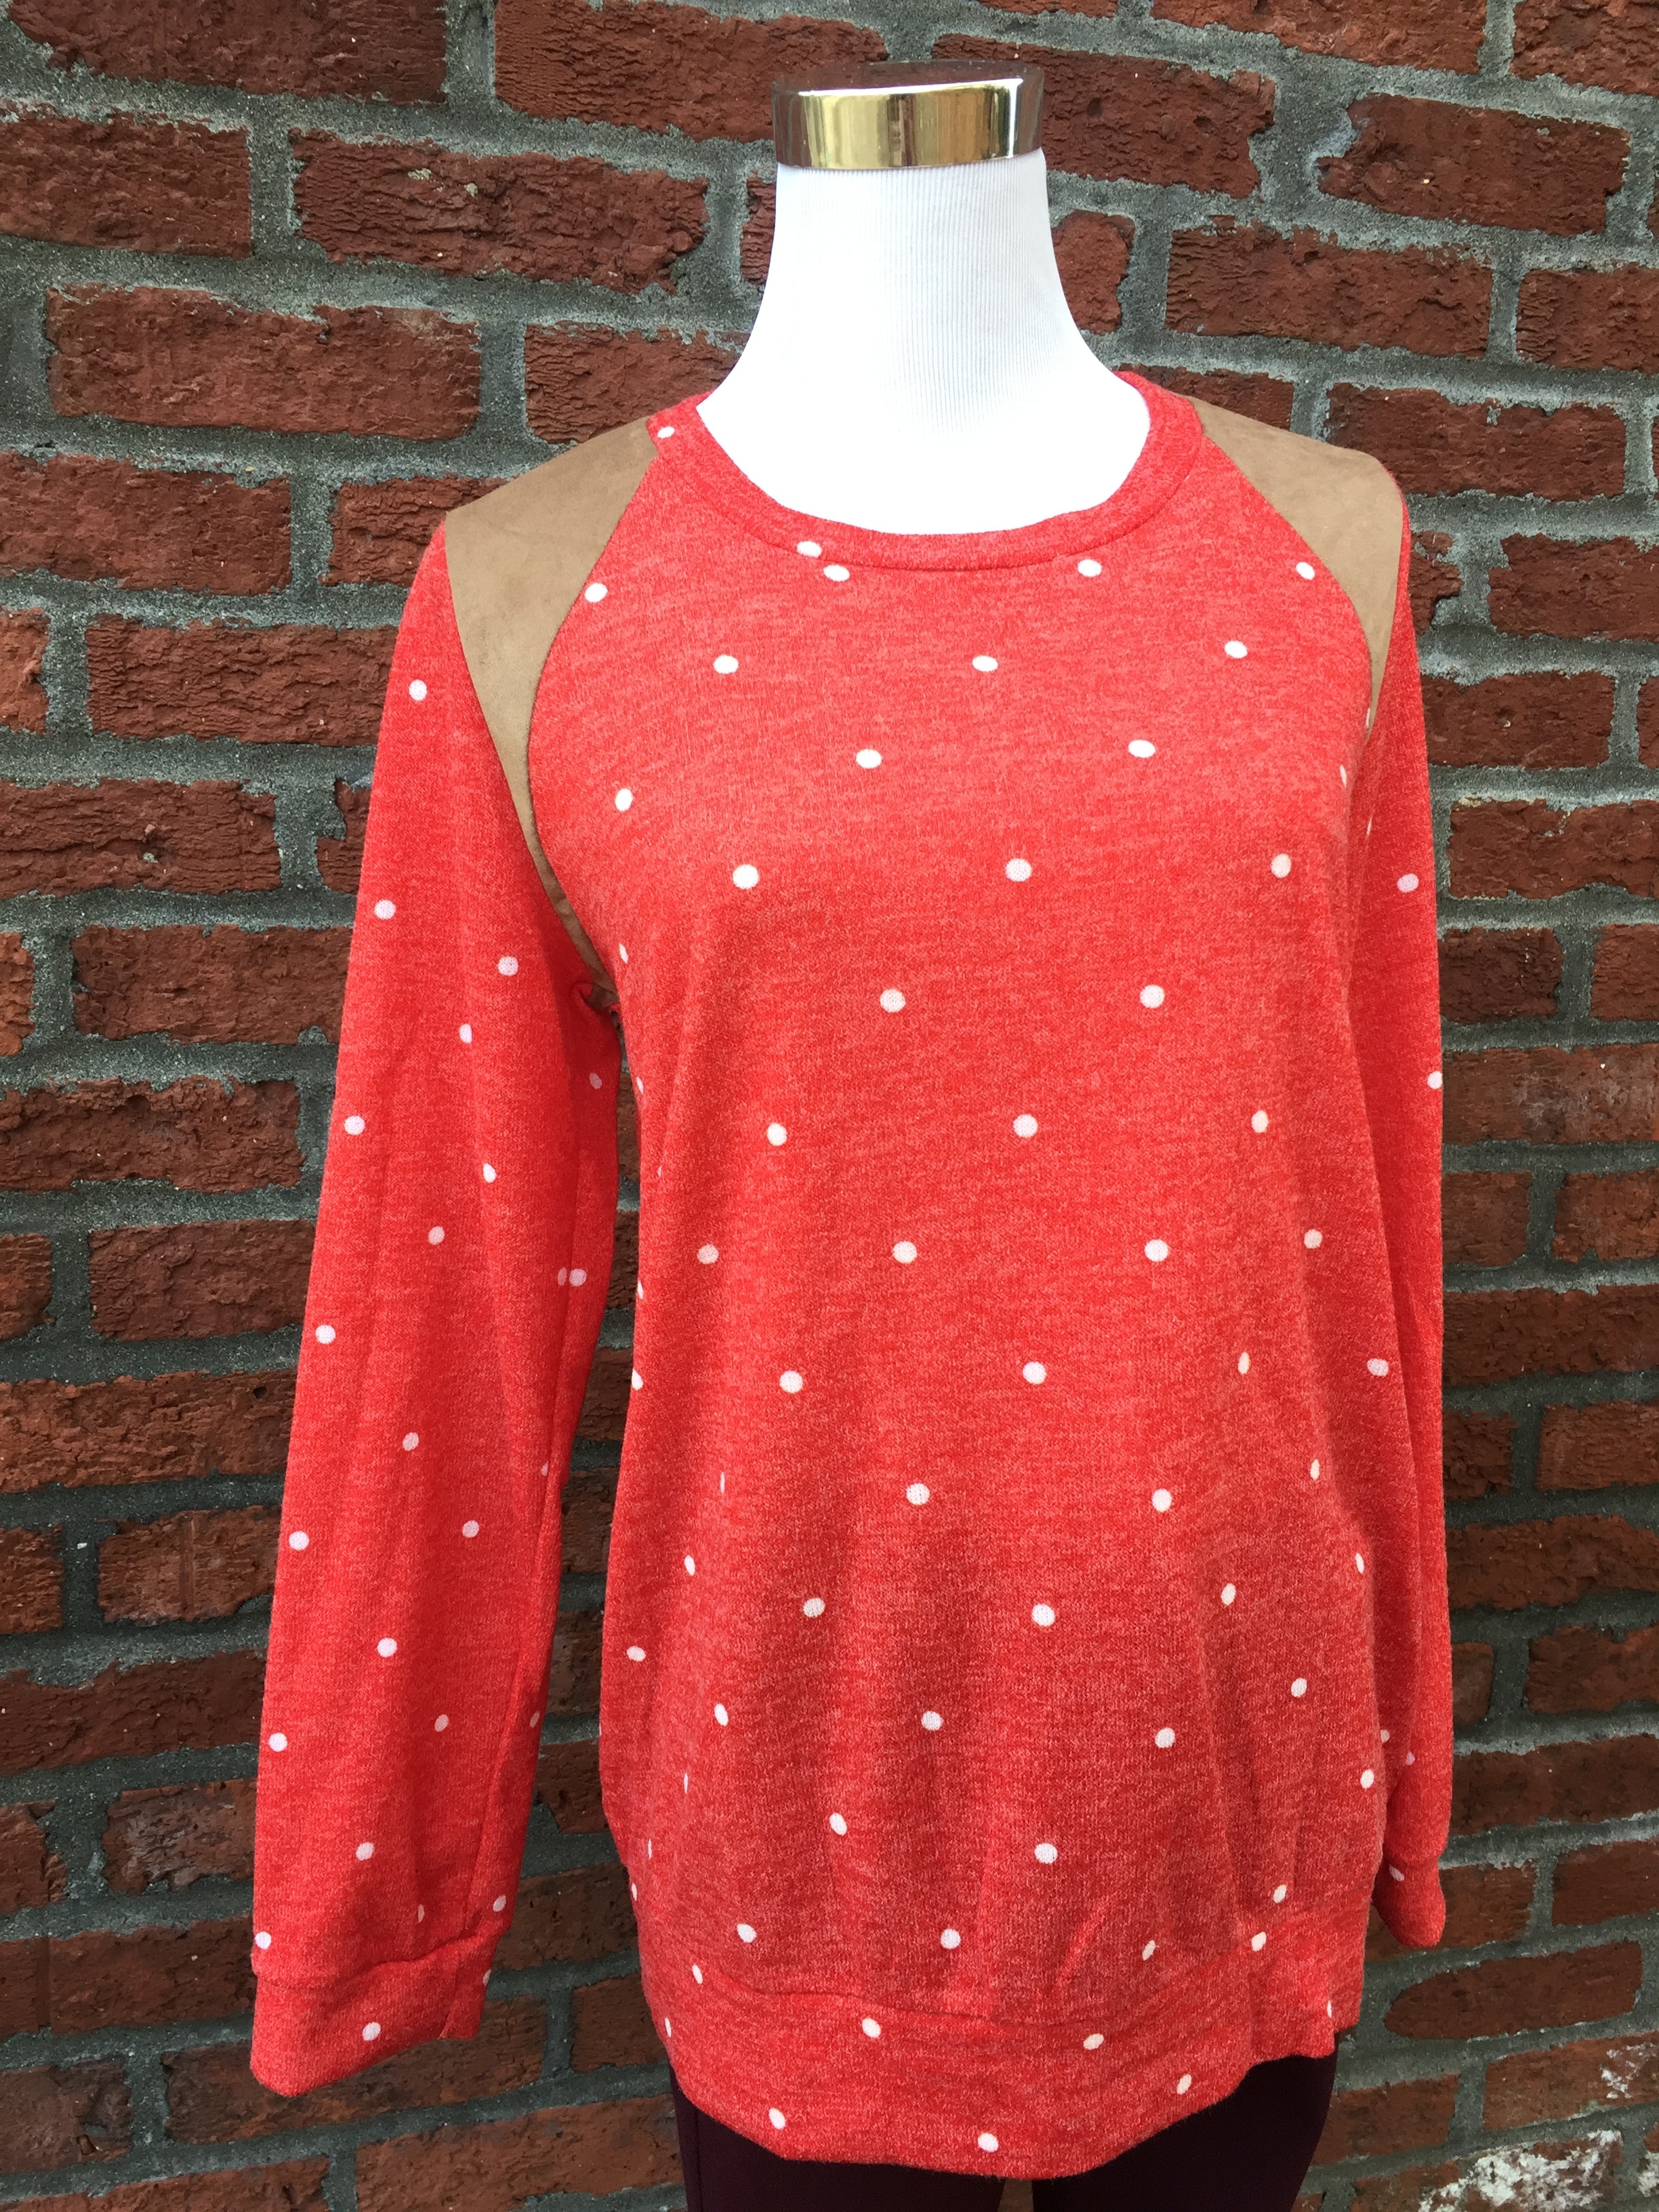 Polka Dot Sweater ($35)